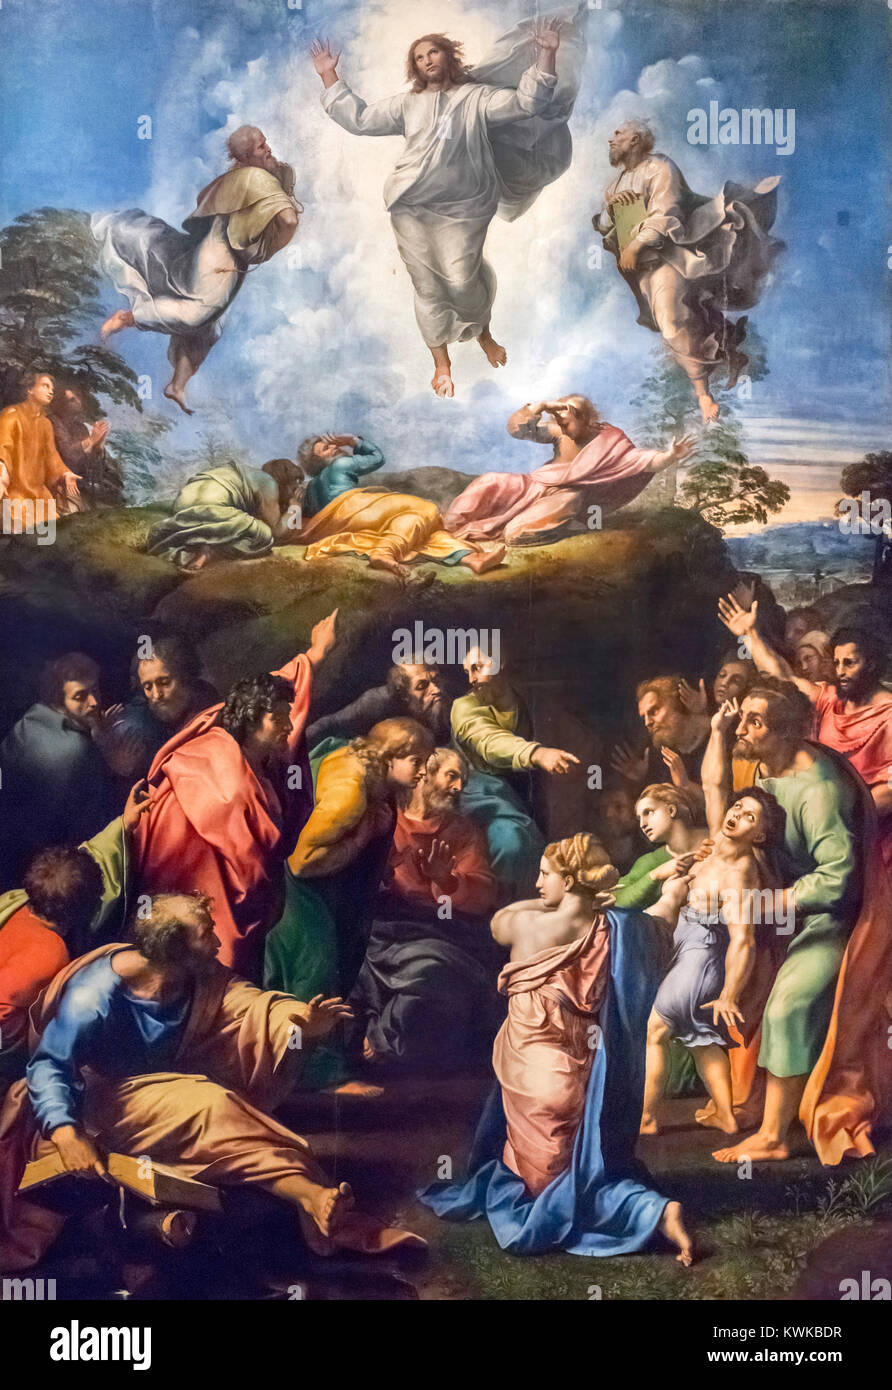 The Transfiguration of Christ by Raphael (Raffaello Sanzio da Urbino, 1483-1520), oil on panel, c.1518-20 Stock Photo